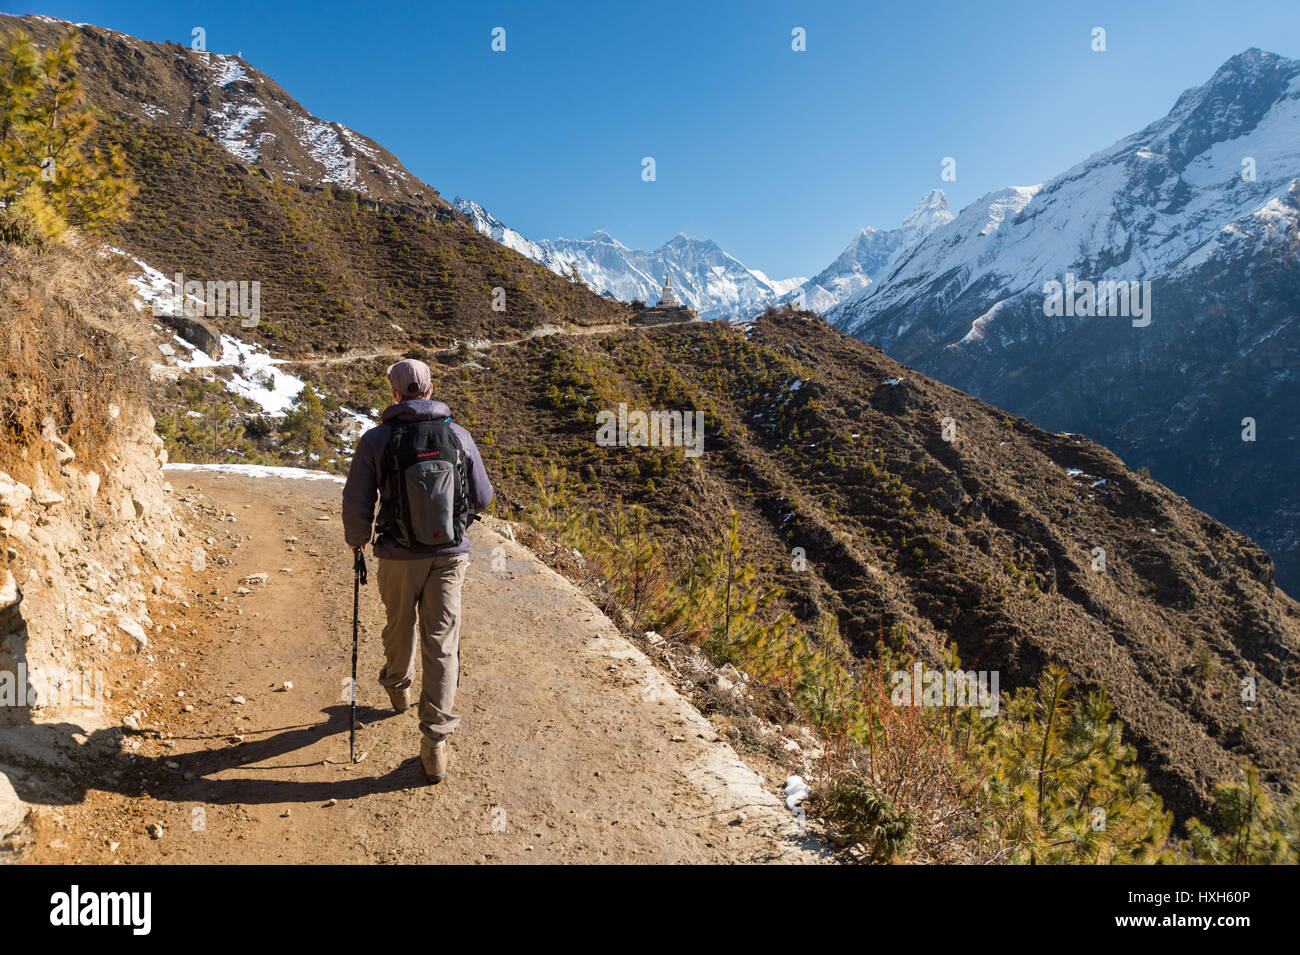 Trekker sur un sentier dans la région de l'himalaya, avec l'Everest et l'Ama Dablam se monte dans l'arrière-plan Banque D'Images